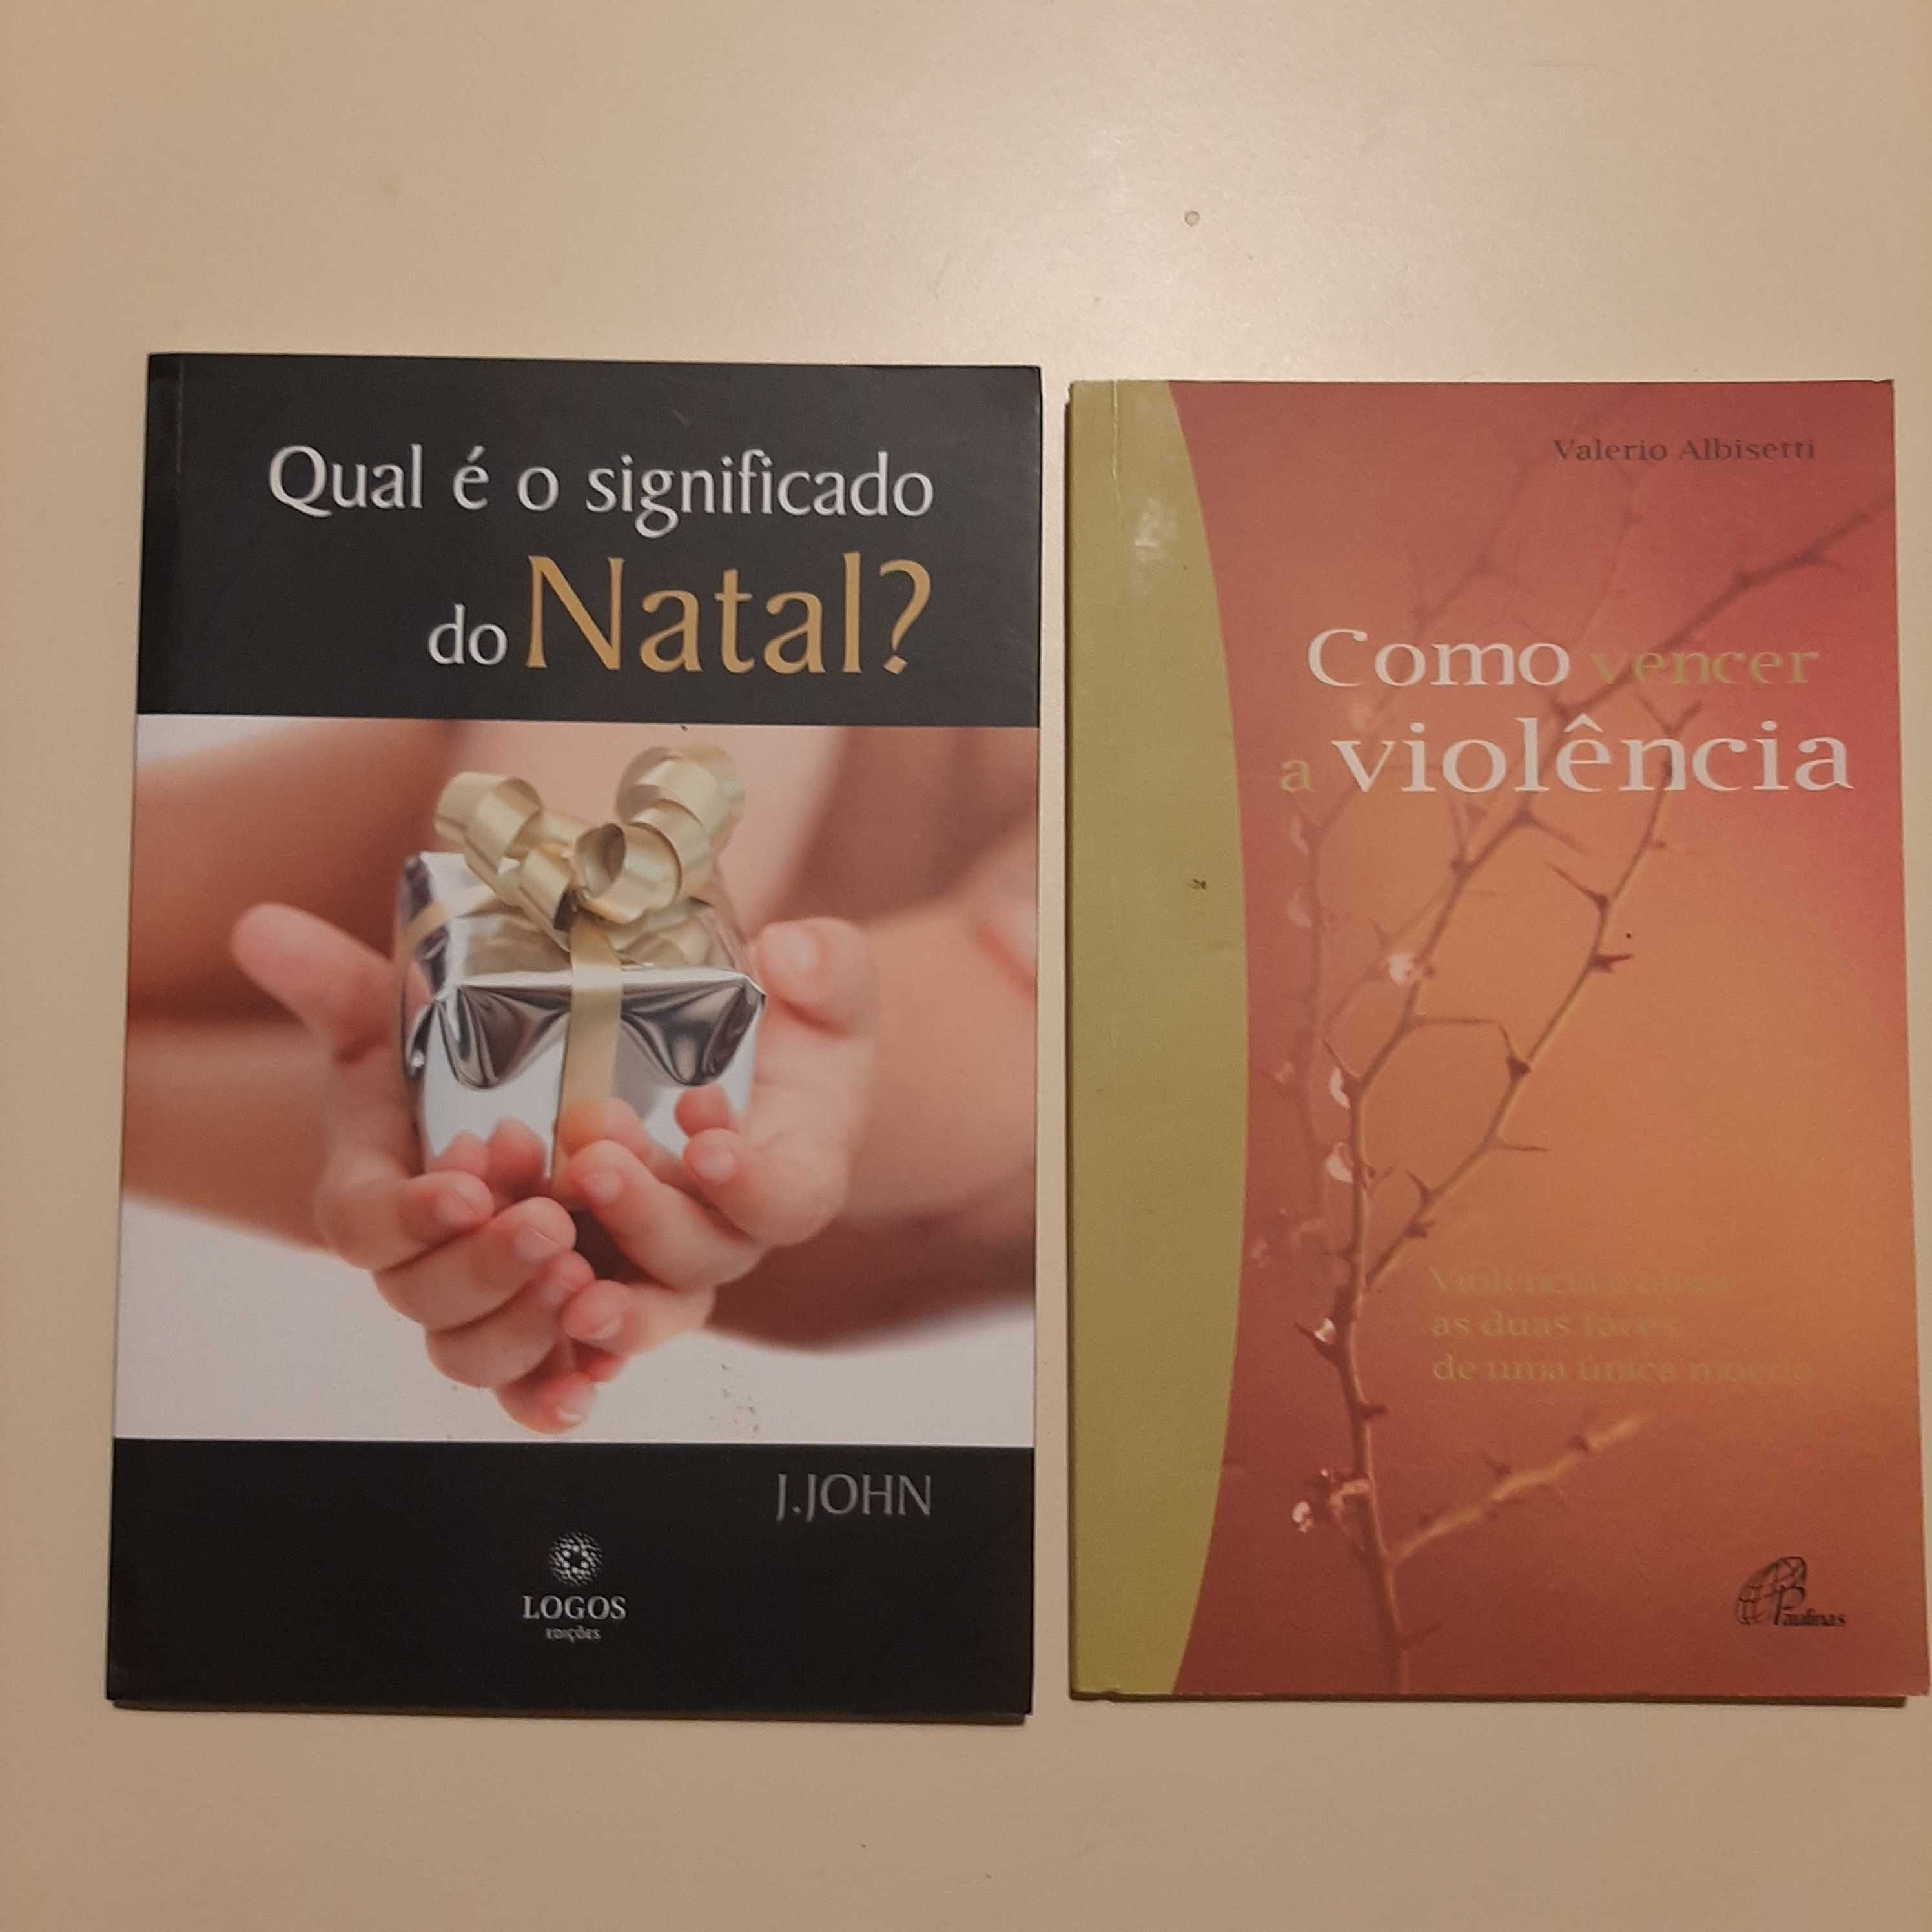 Livros de religião, espiritualidade, psicologia e auto-ajuda